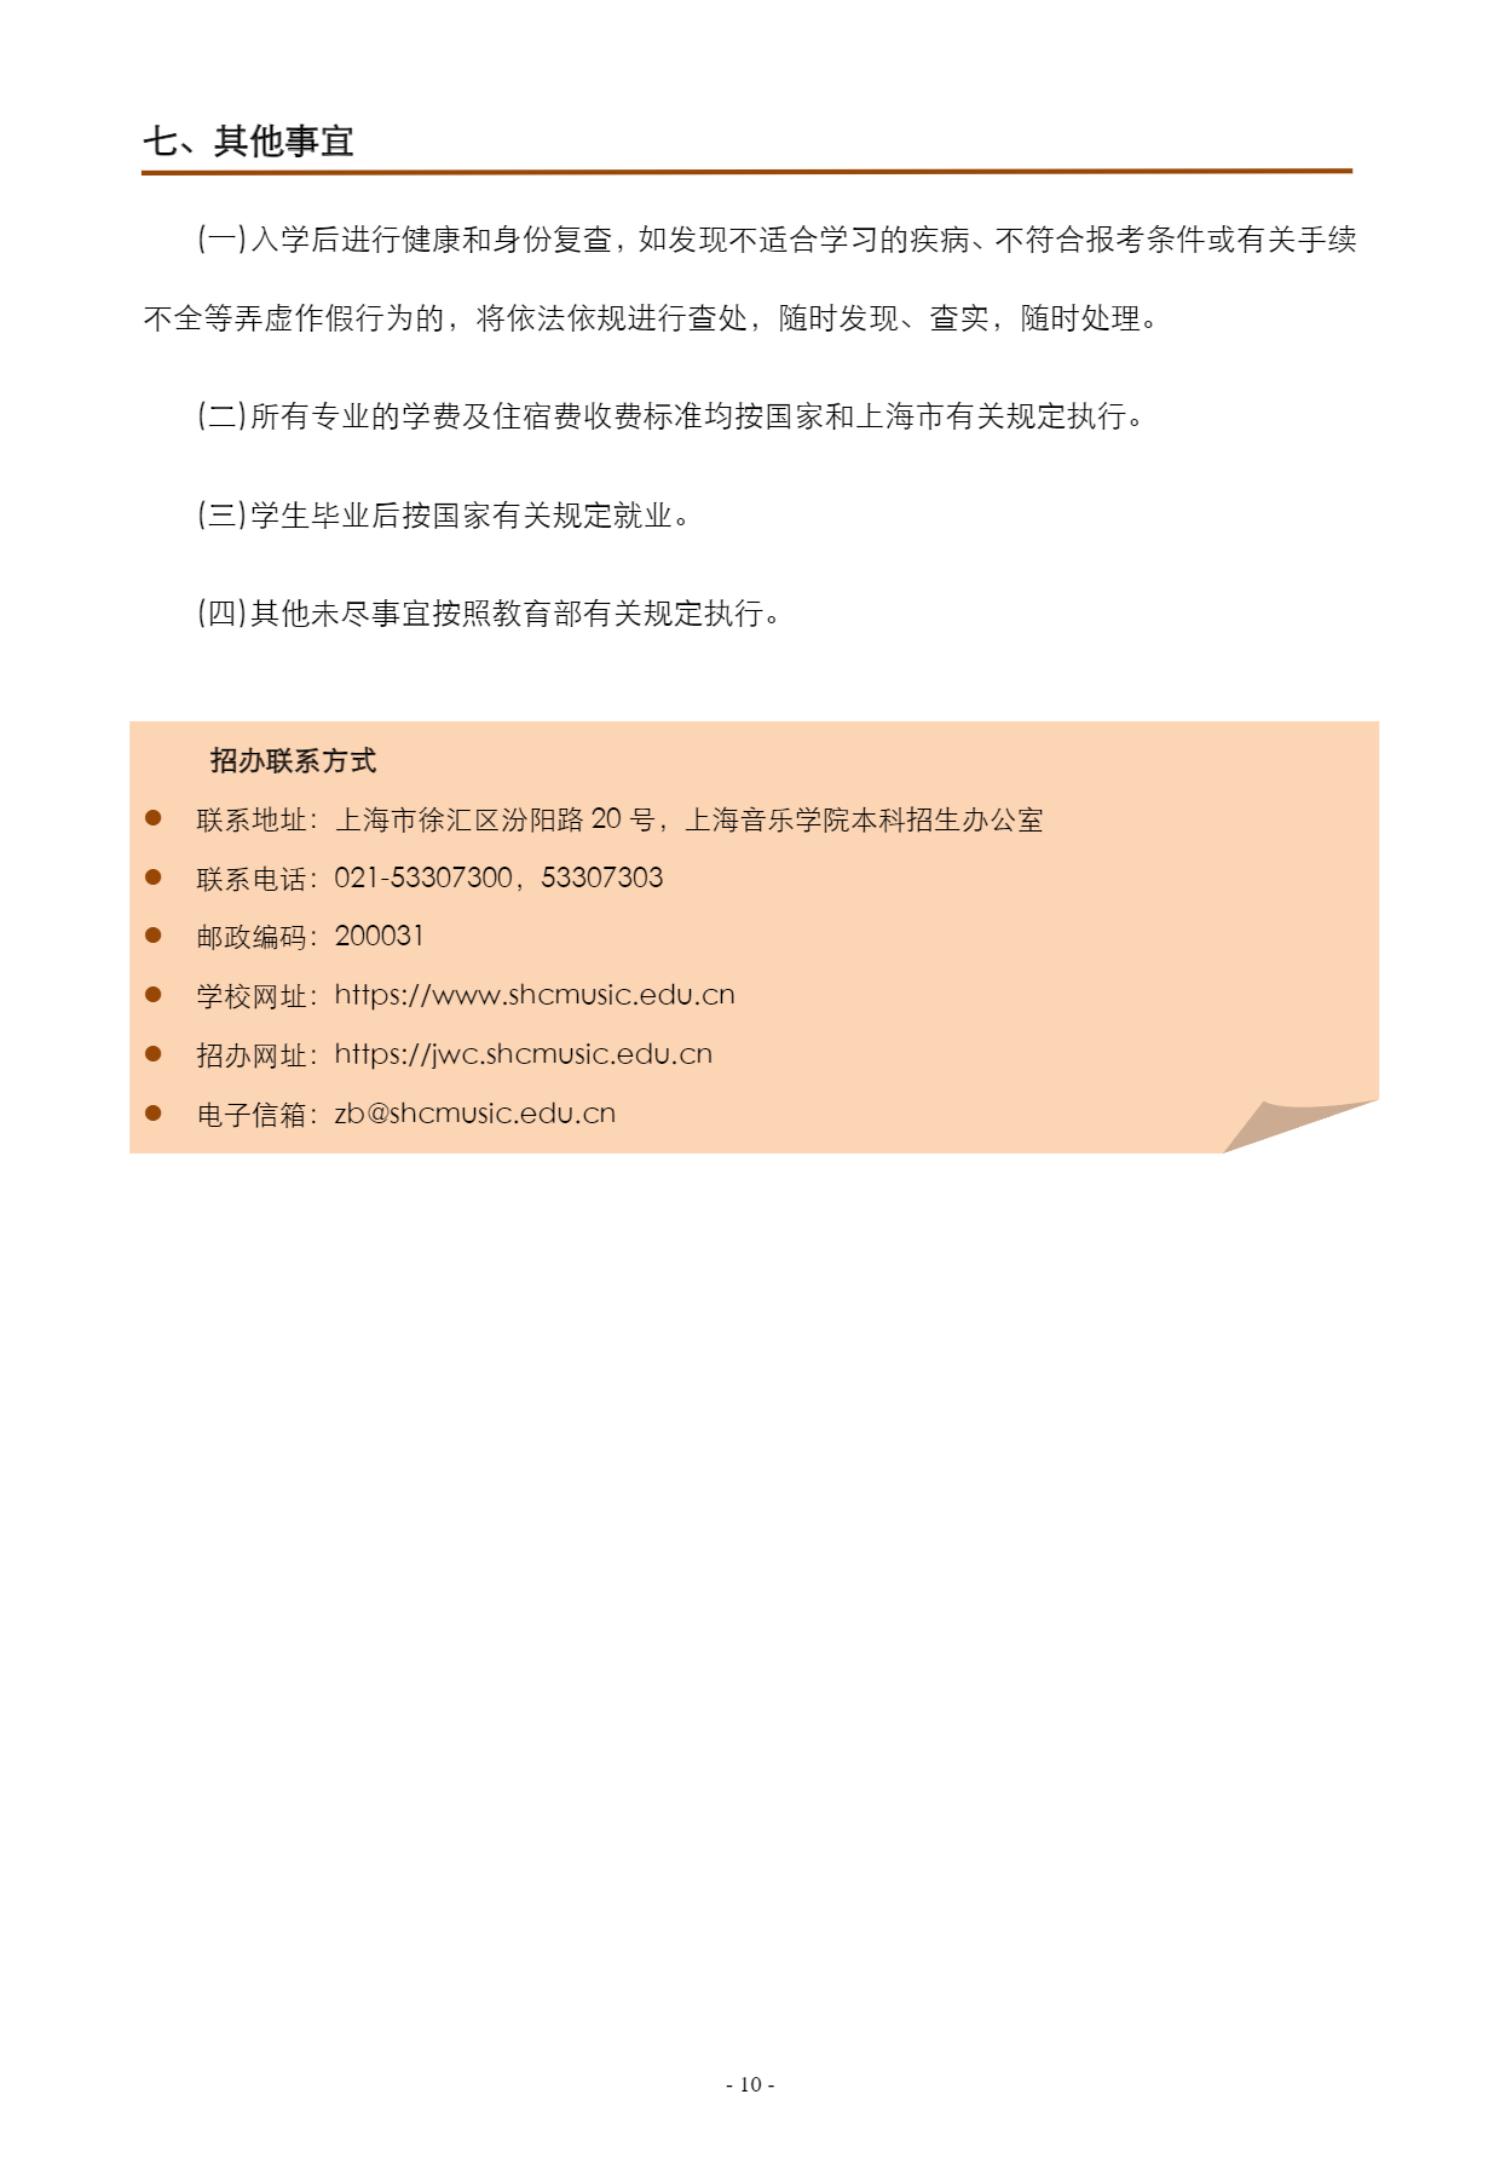 上海音乐学院本科艺术类校考专业招生简章_10.jpg